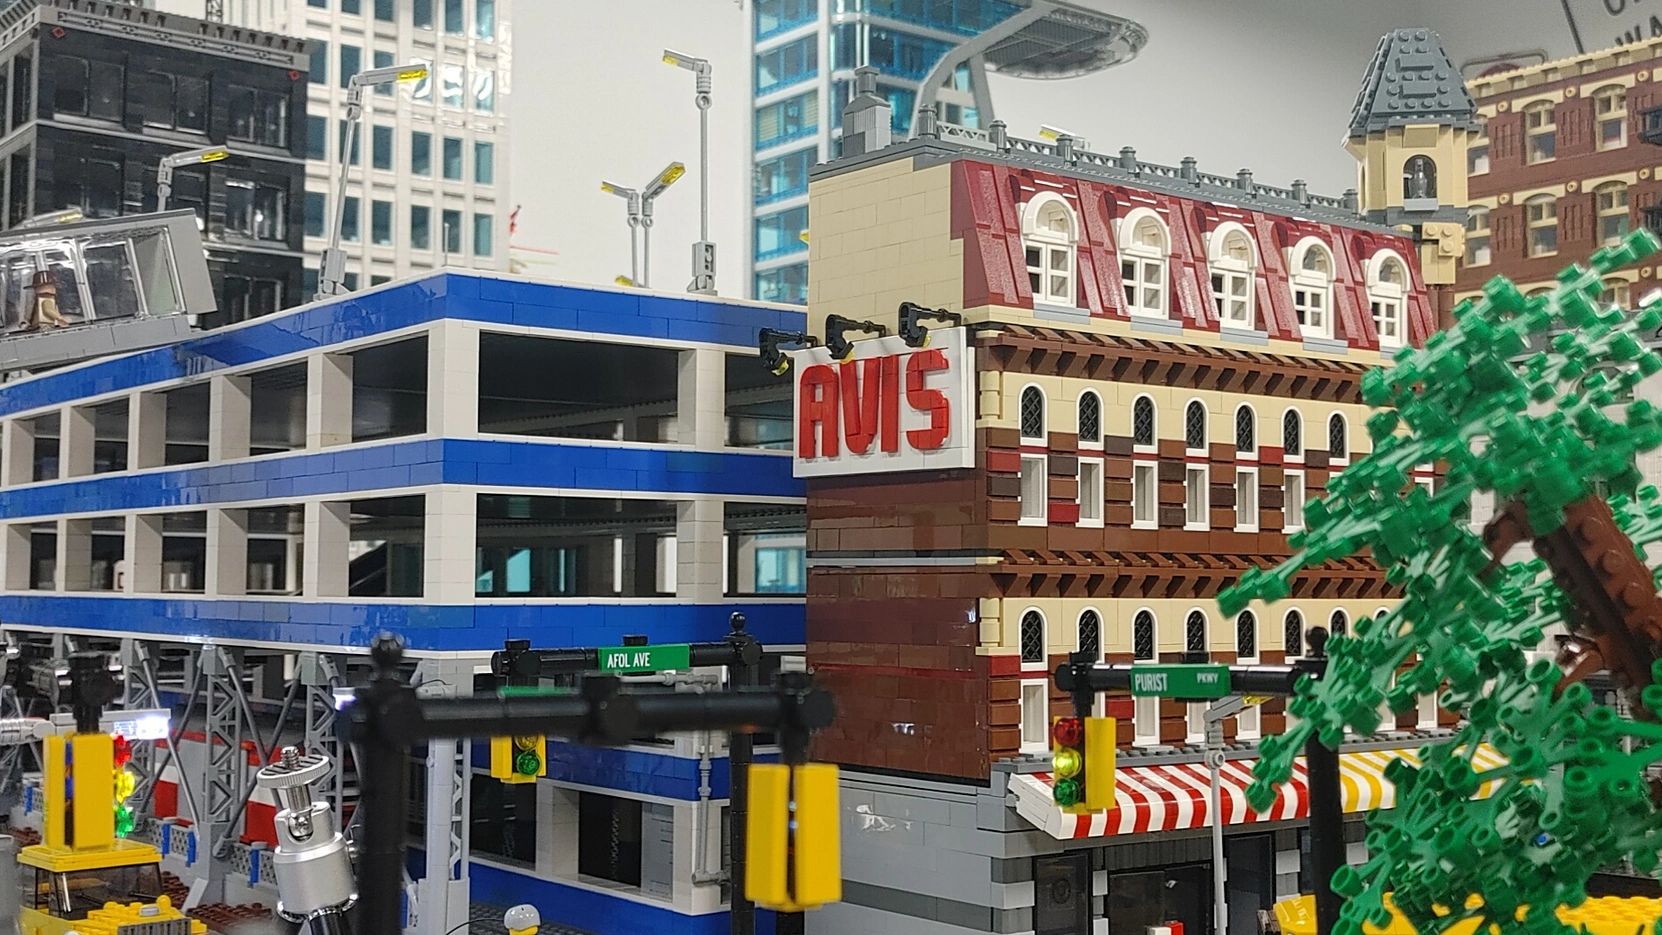 Lego City Mocs